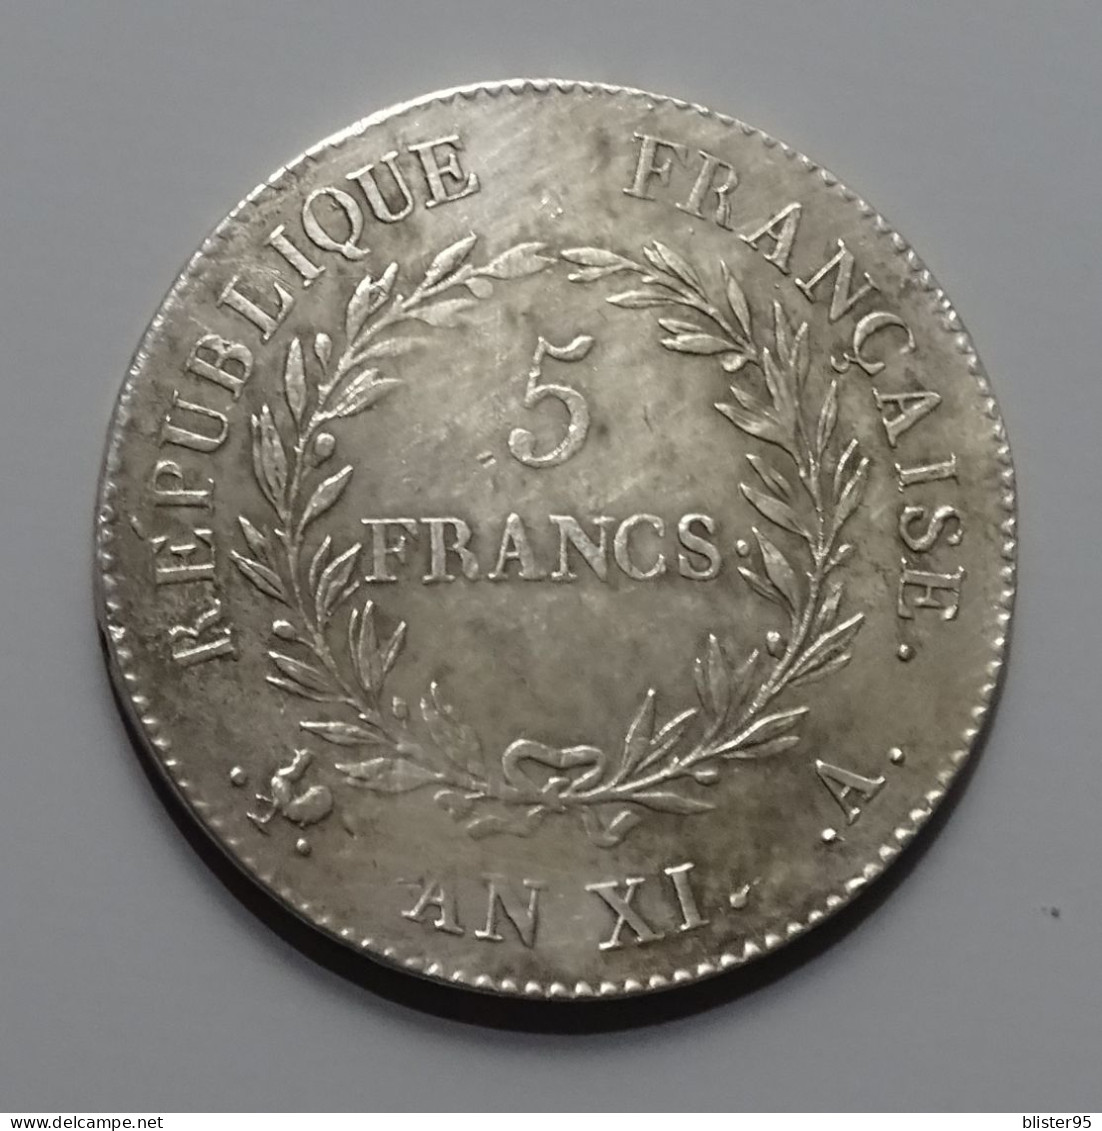 Magnifique 5 Francs An XI A (1803) Bonaparte Premier Consul Etat Ttb A Superbe - 5 Francs